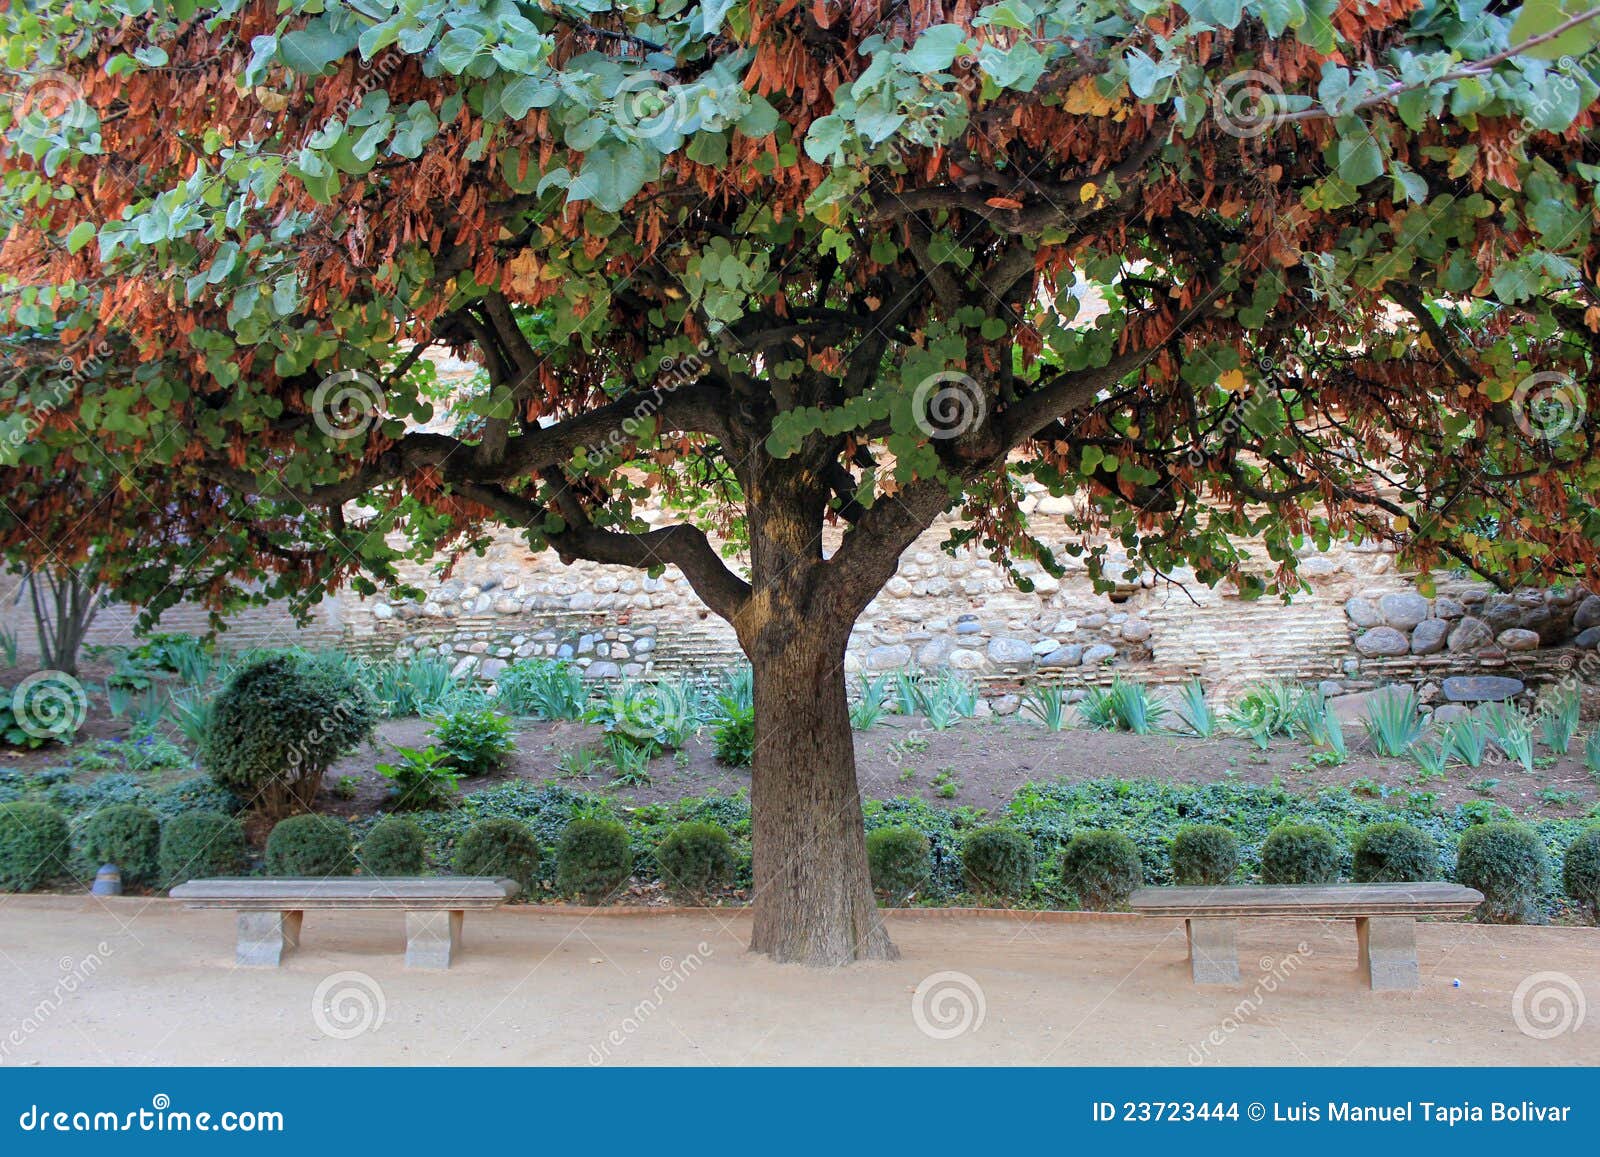 cercis siliquastrum (tree of love)